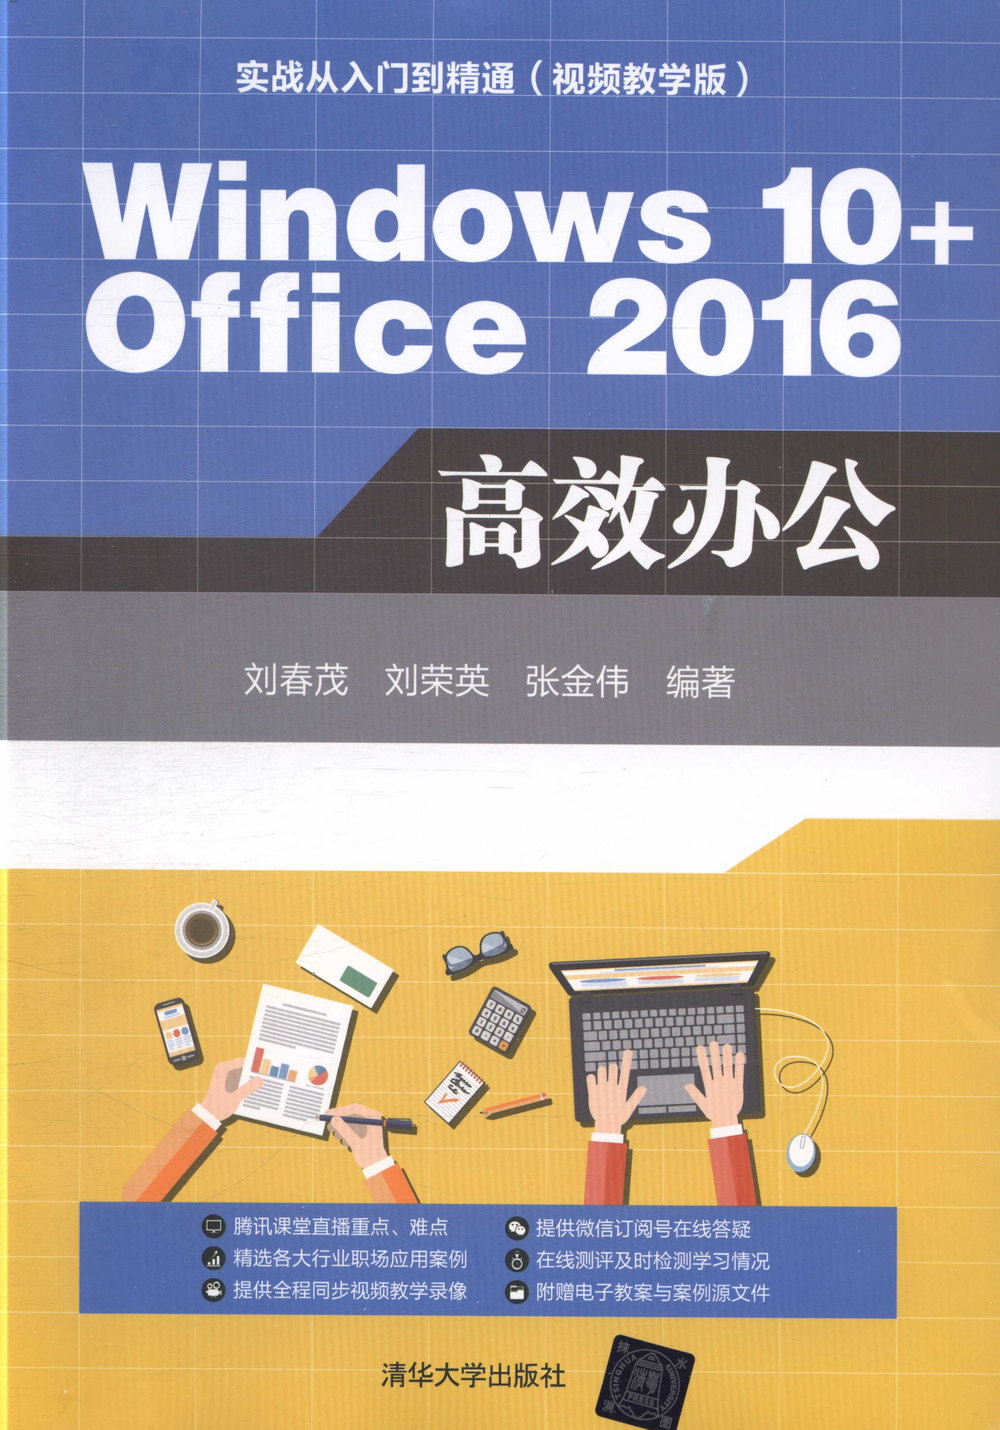 Windows 10+Office 2016高效辦公